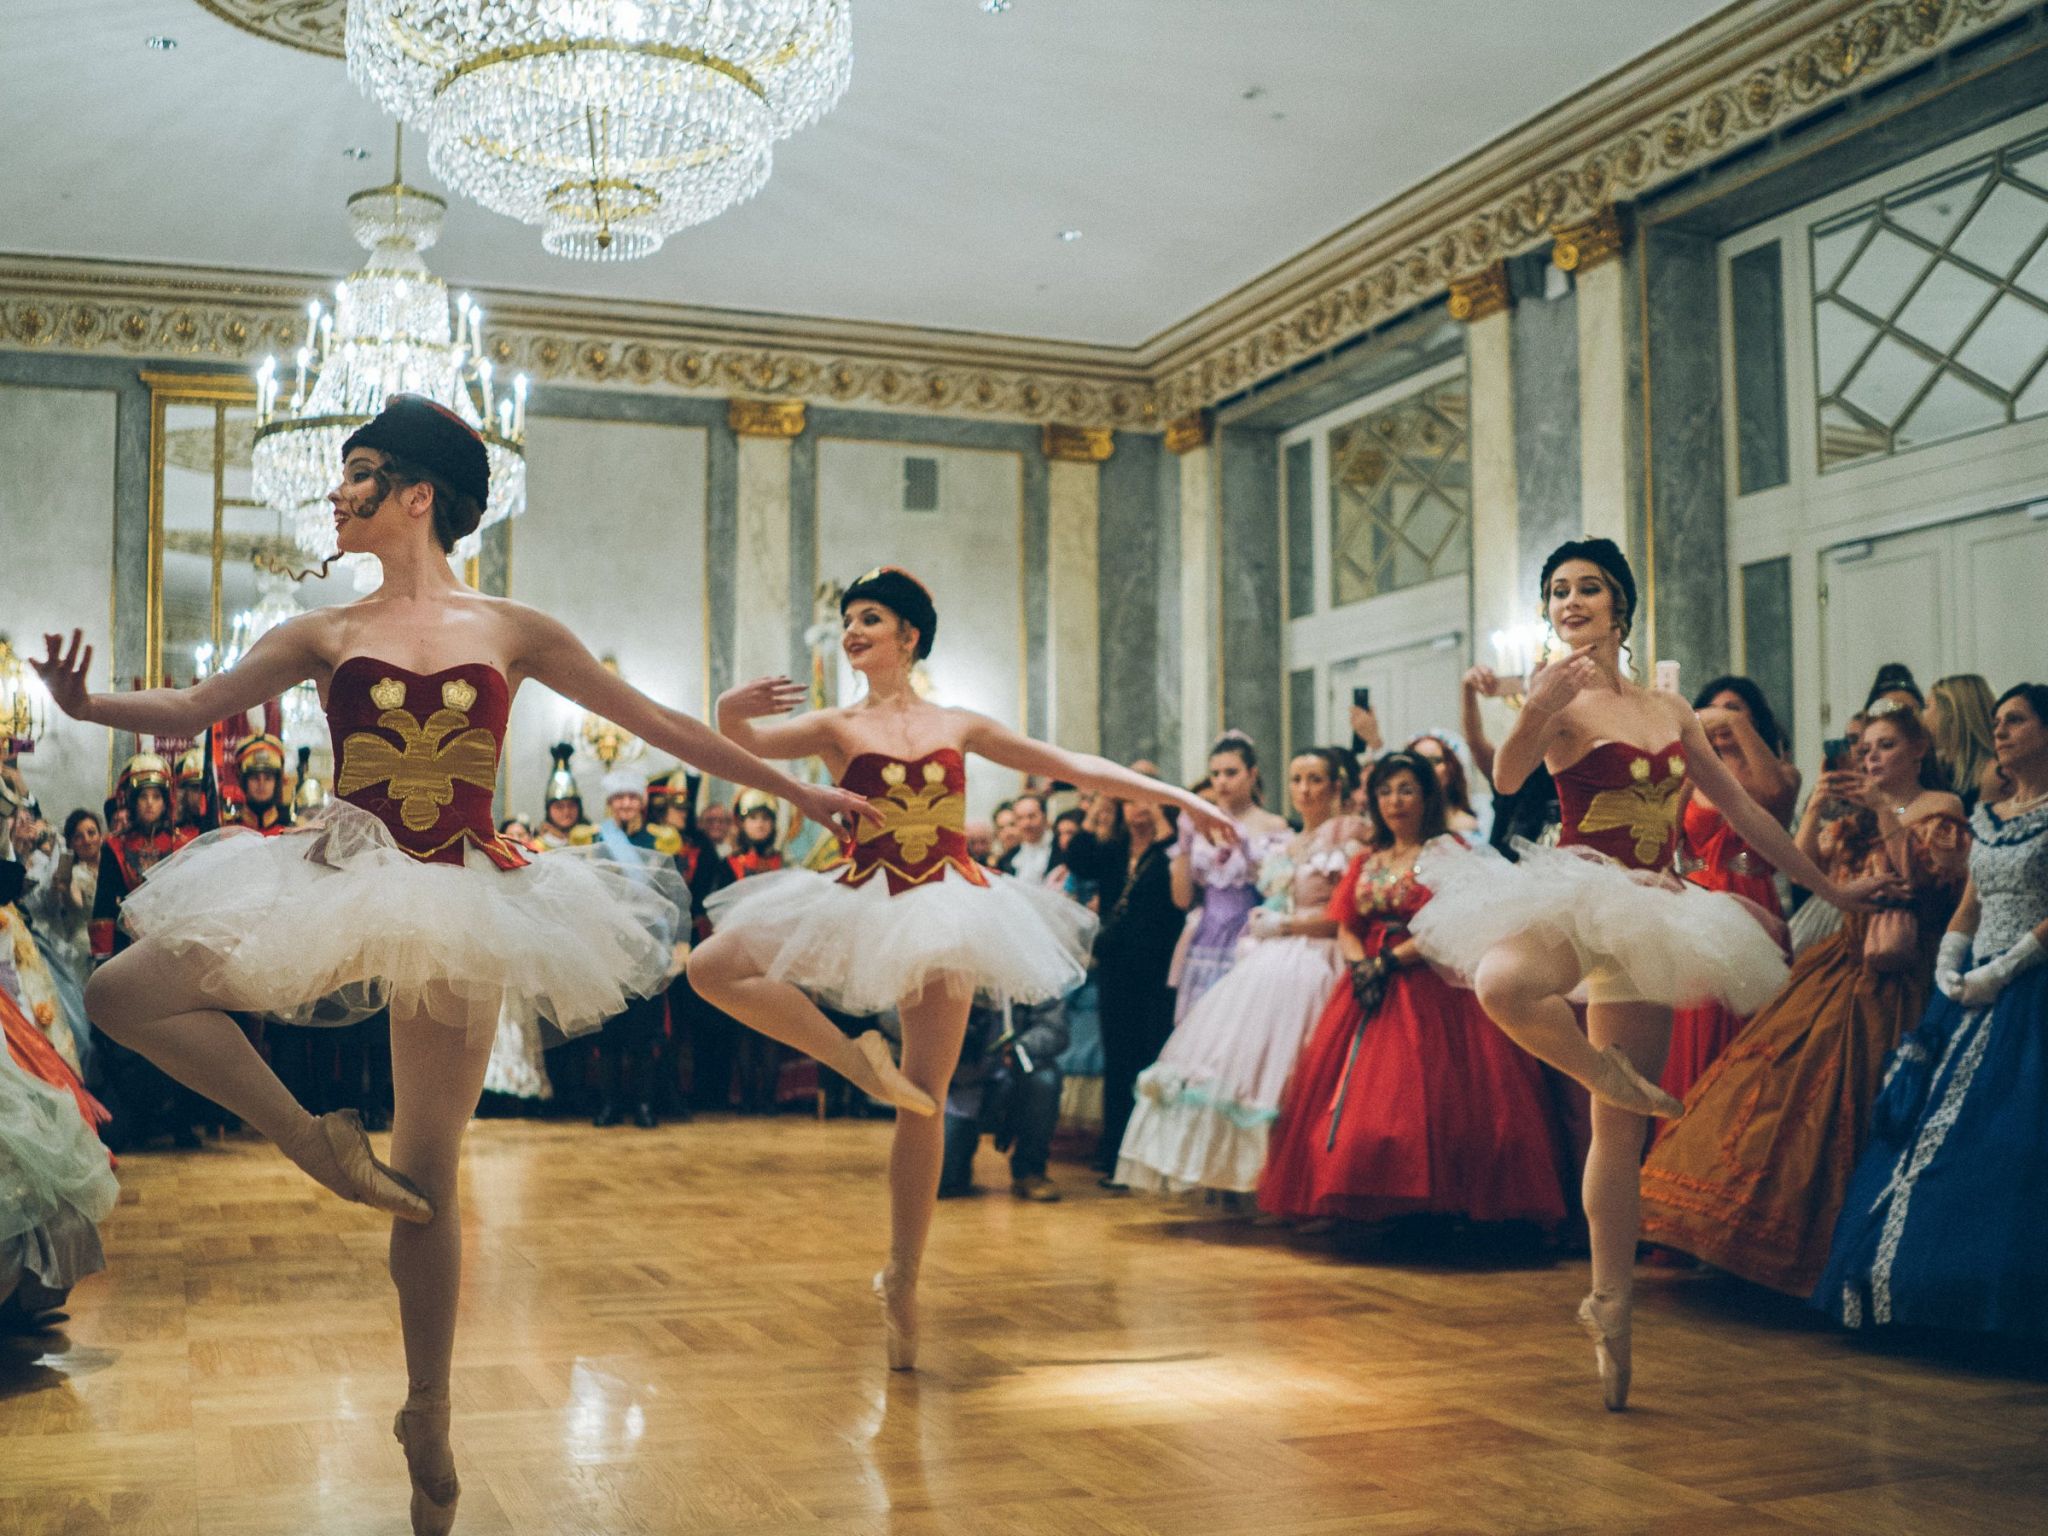 Il 12 gennaio arriva il Gran Ballo Russo a Palazzo Brancaccio organizzato dalla Compagnia Nazionale di Danza Storica